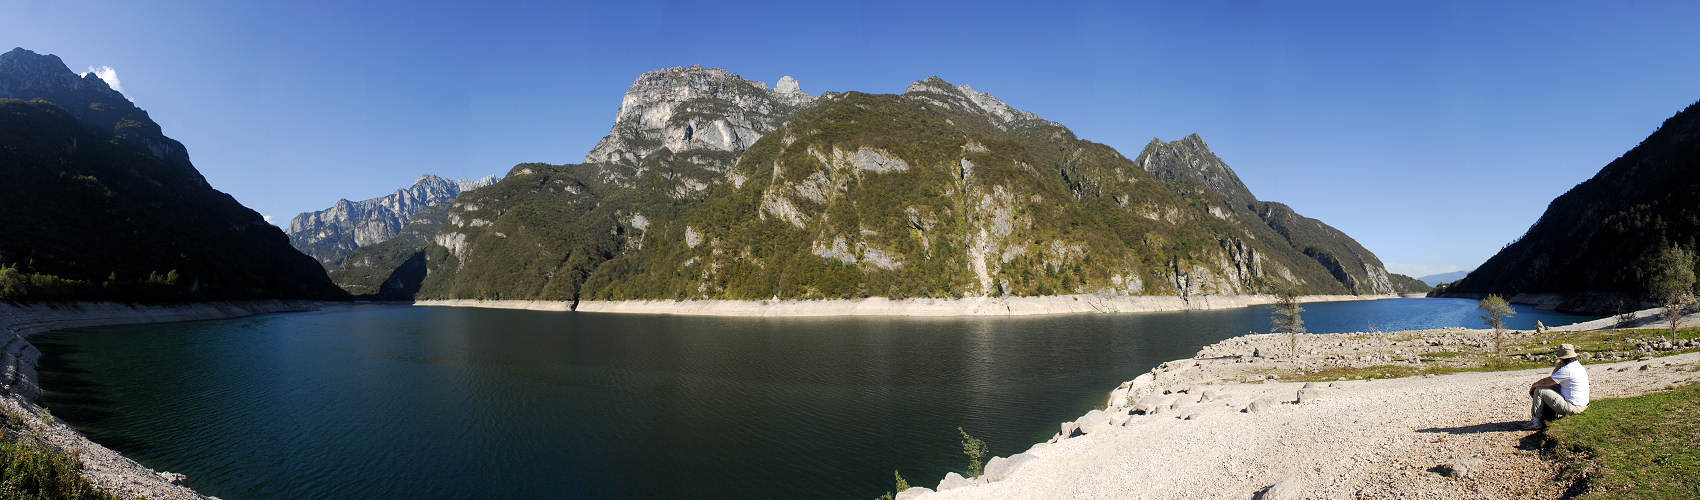 lago del Mis nella Valle del Mis, Parco Nazionale Dolomiti Bellunesi